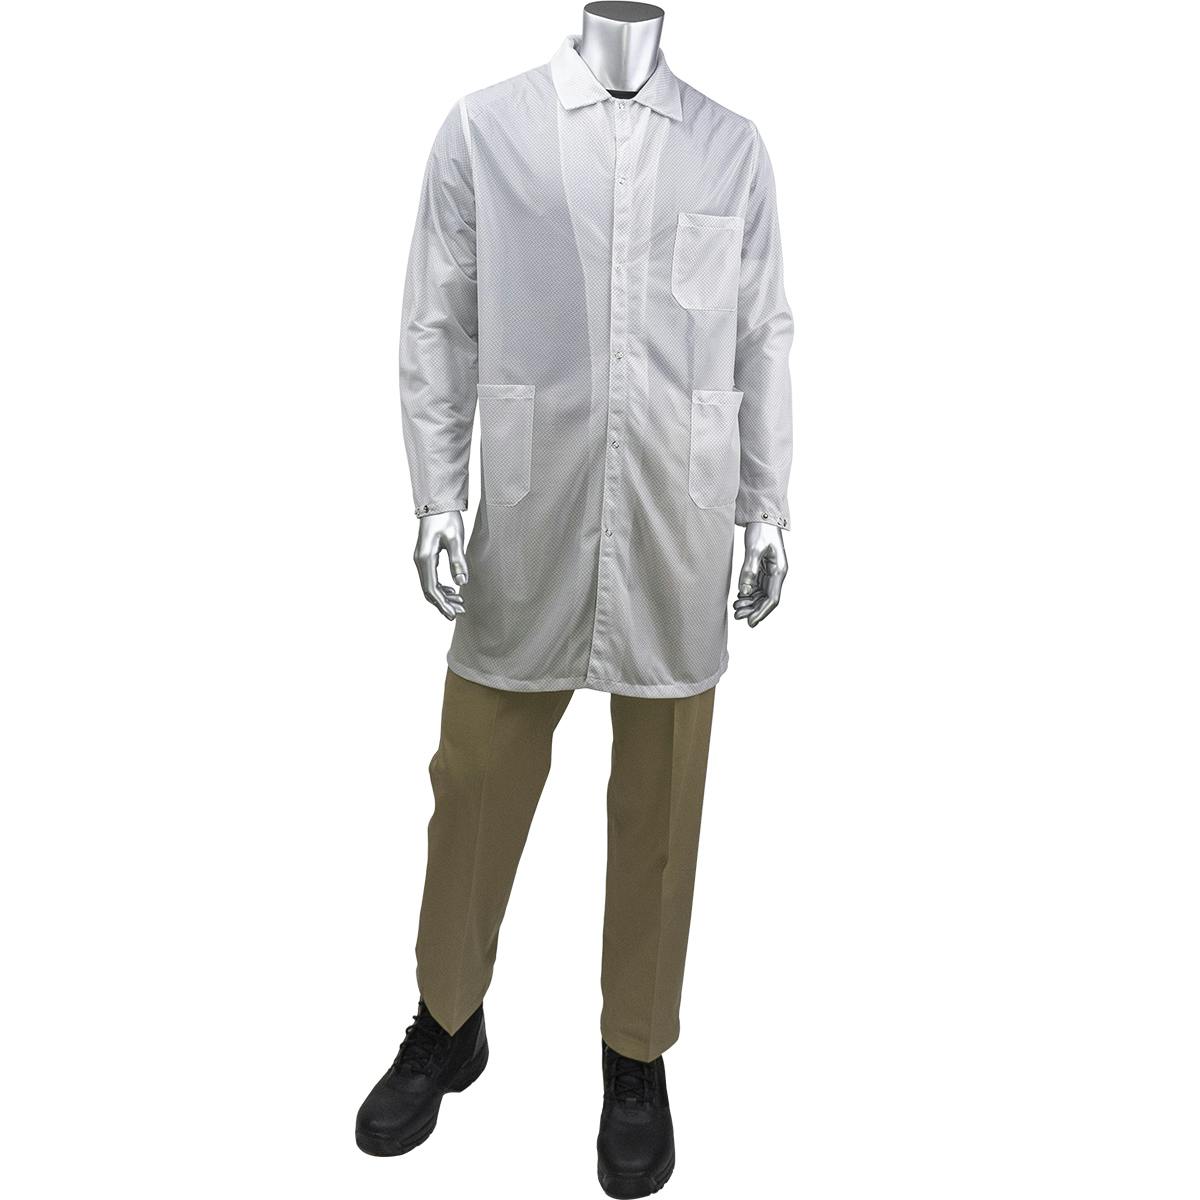 StatStar Long ESD Labcoat, White (BR51-44WH)